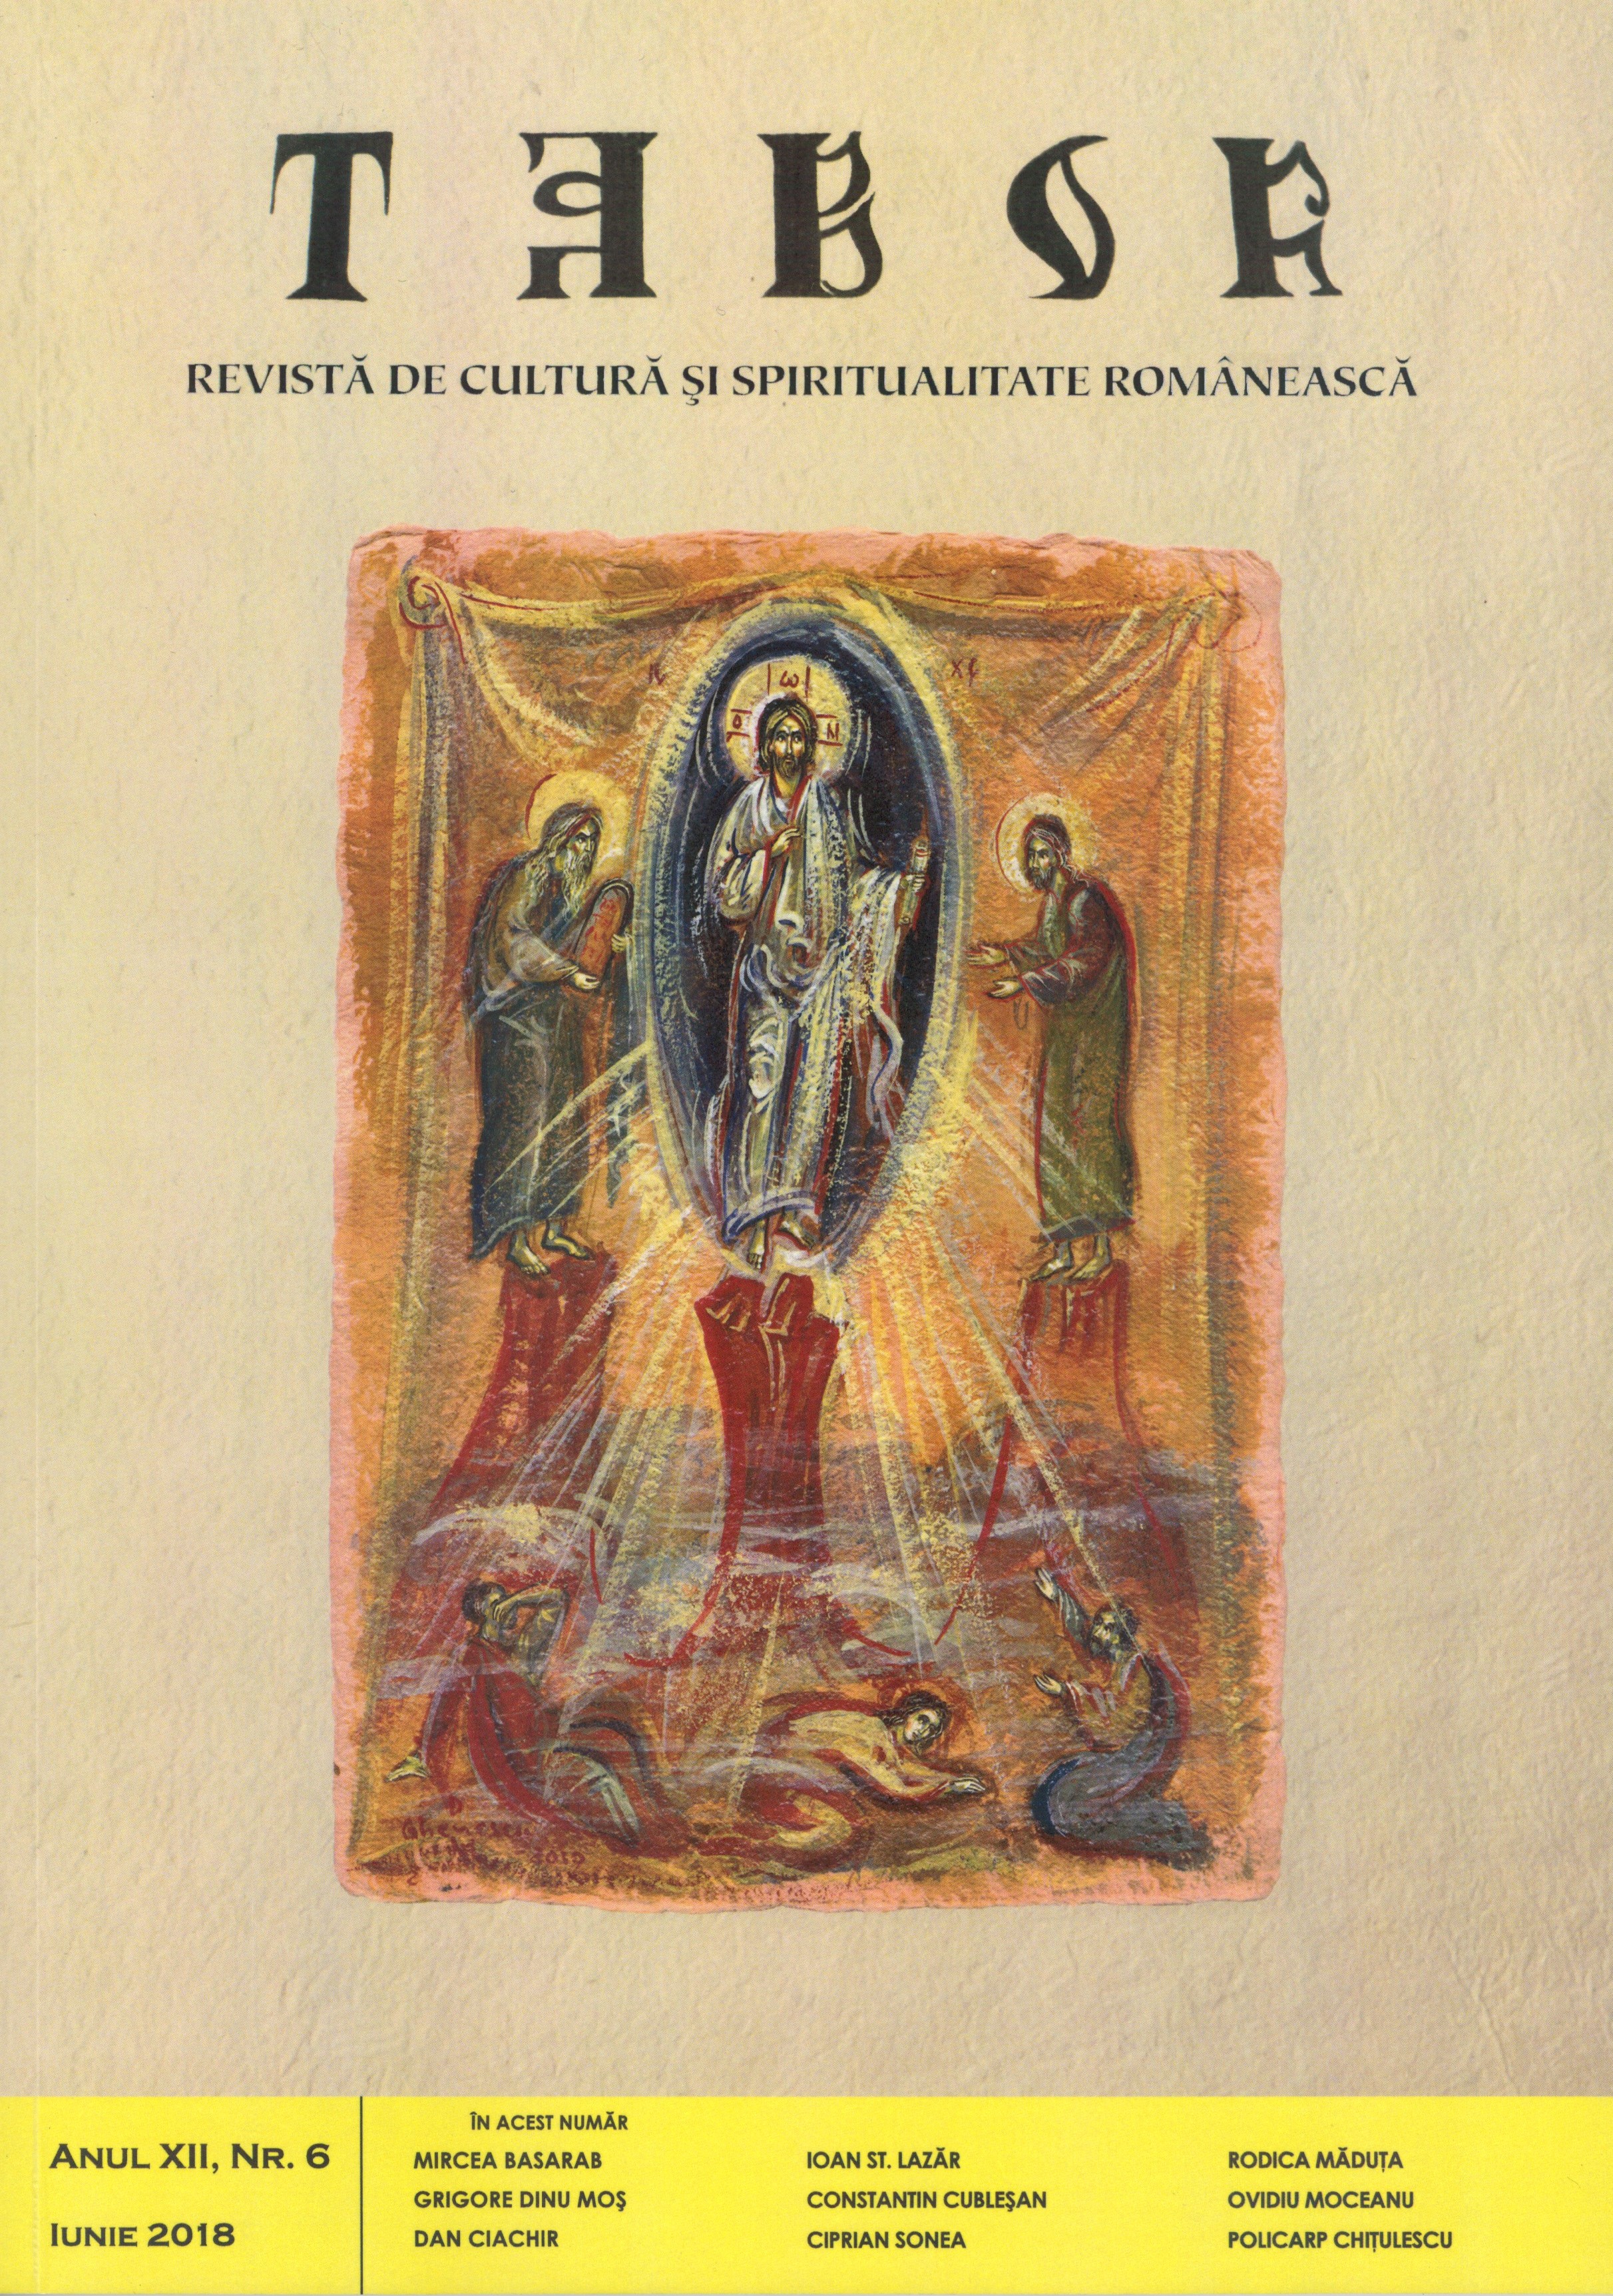 Sfinţenia şi sfinţii în tradiţia şi învăţătura Bisericii Ortodoxe. Provocări actuale şi posibile reformulări